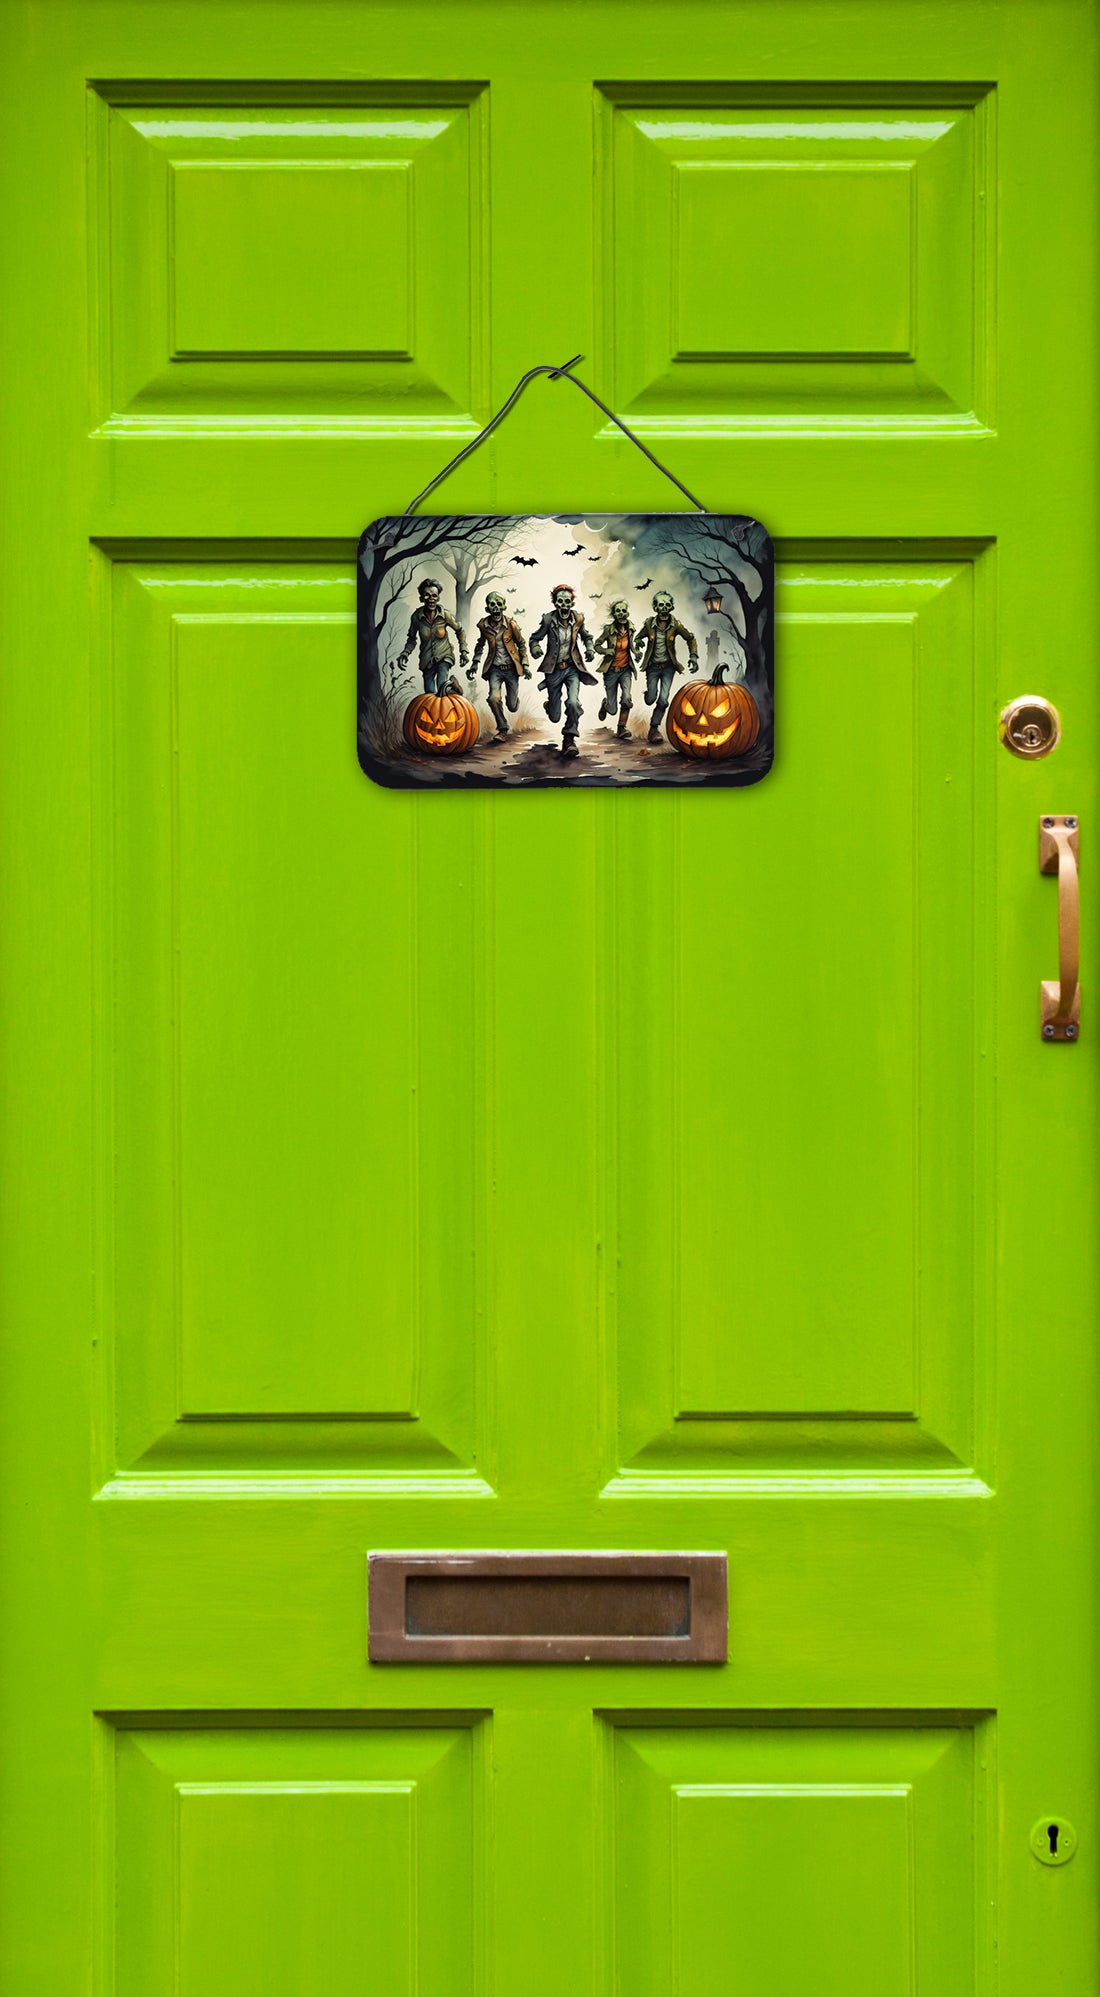 Buy this Zombies Spooky Halloween Wall or Door Hanging Prints